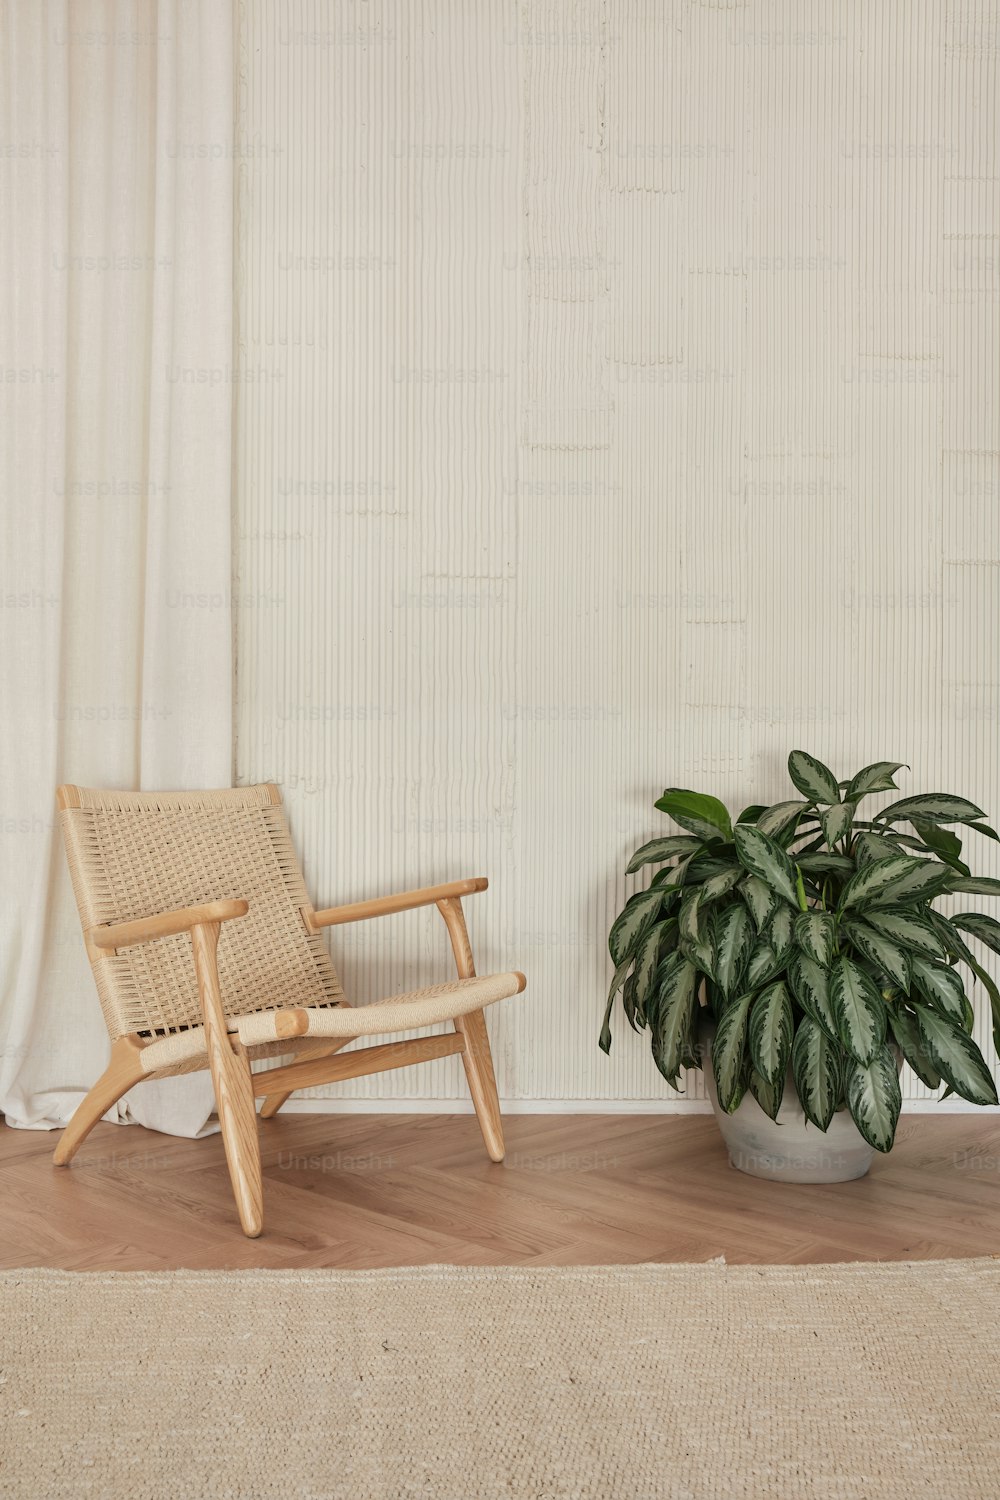 una silla junto a una planta en maceta sobre un suelo de madera